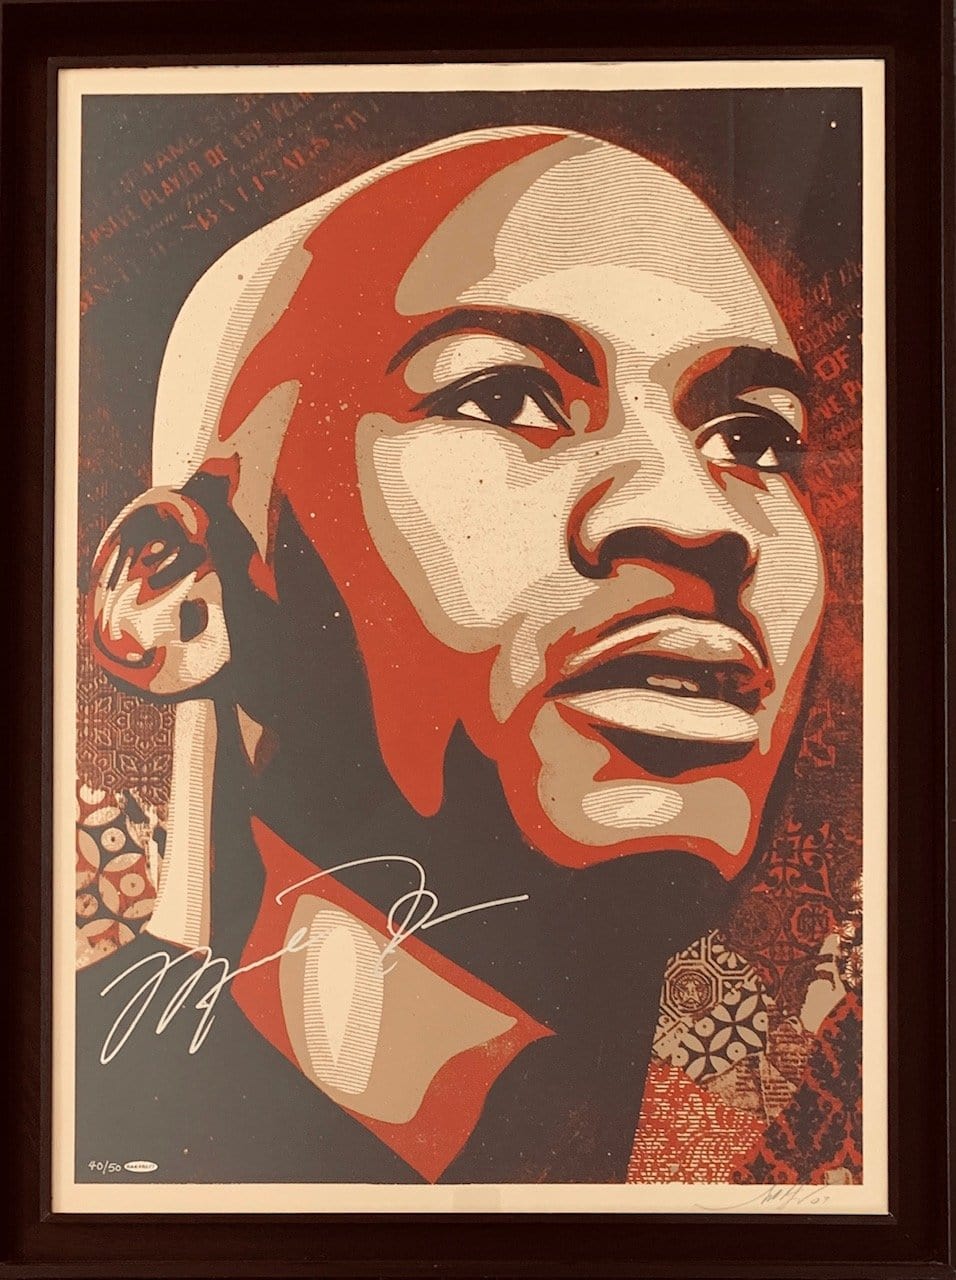 Michael Jordan Hall of Fame Portrait (Large Format - Dual Signed), 2009 Enlarged